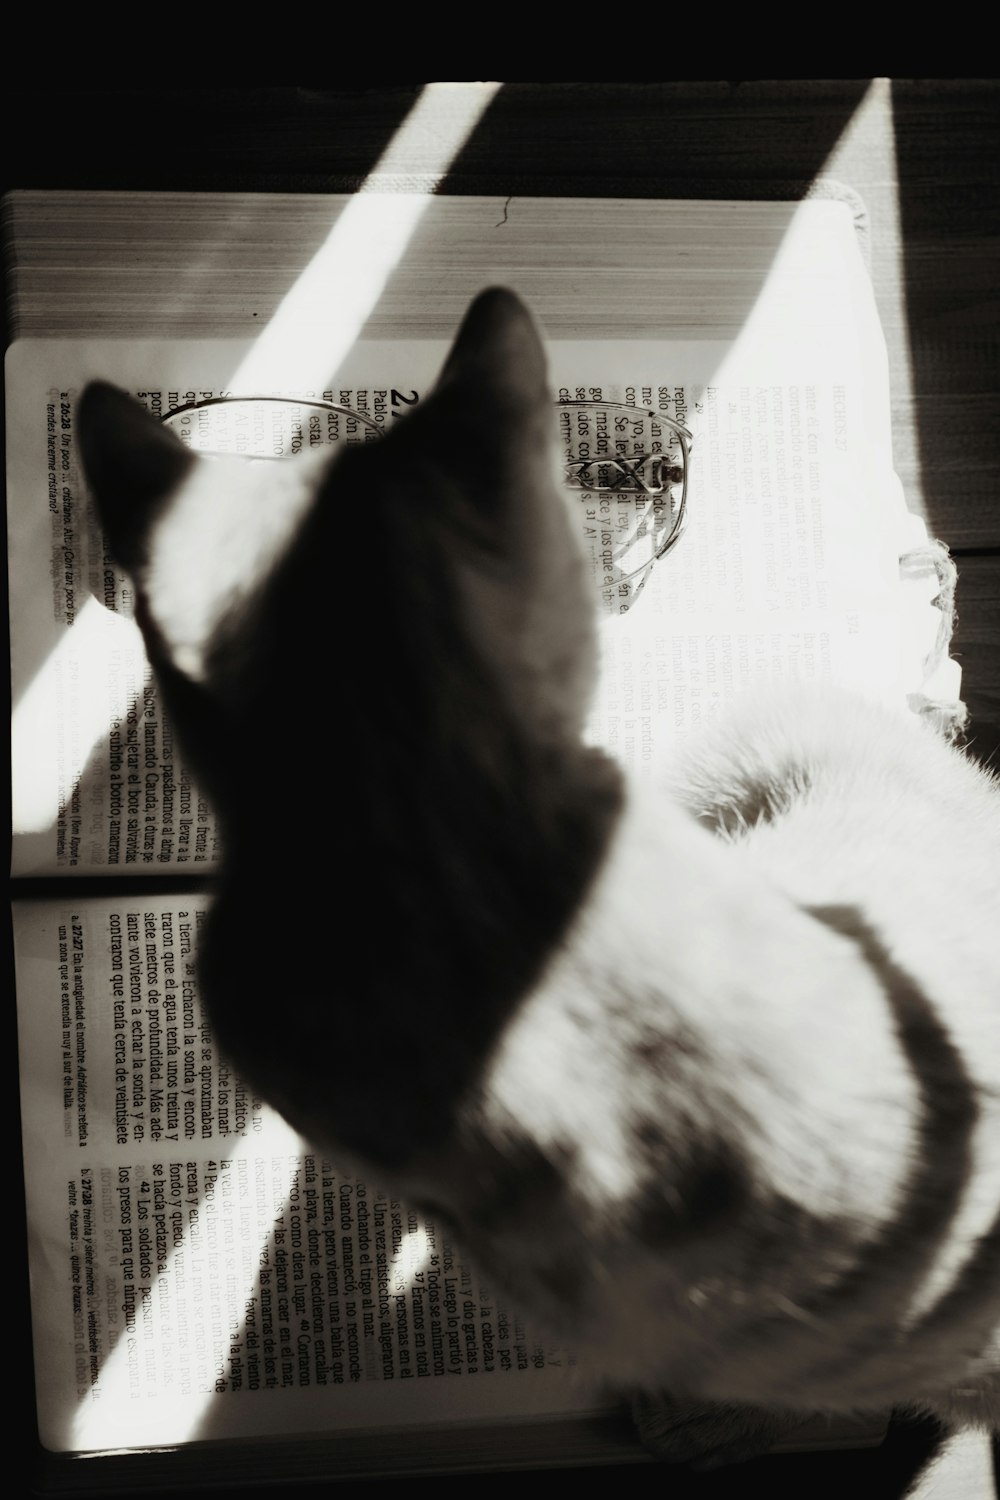 Katze oben offenes Buch